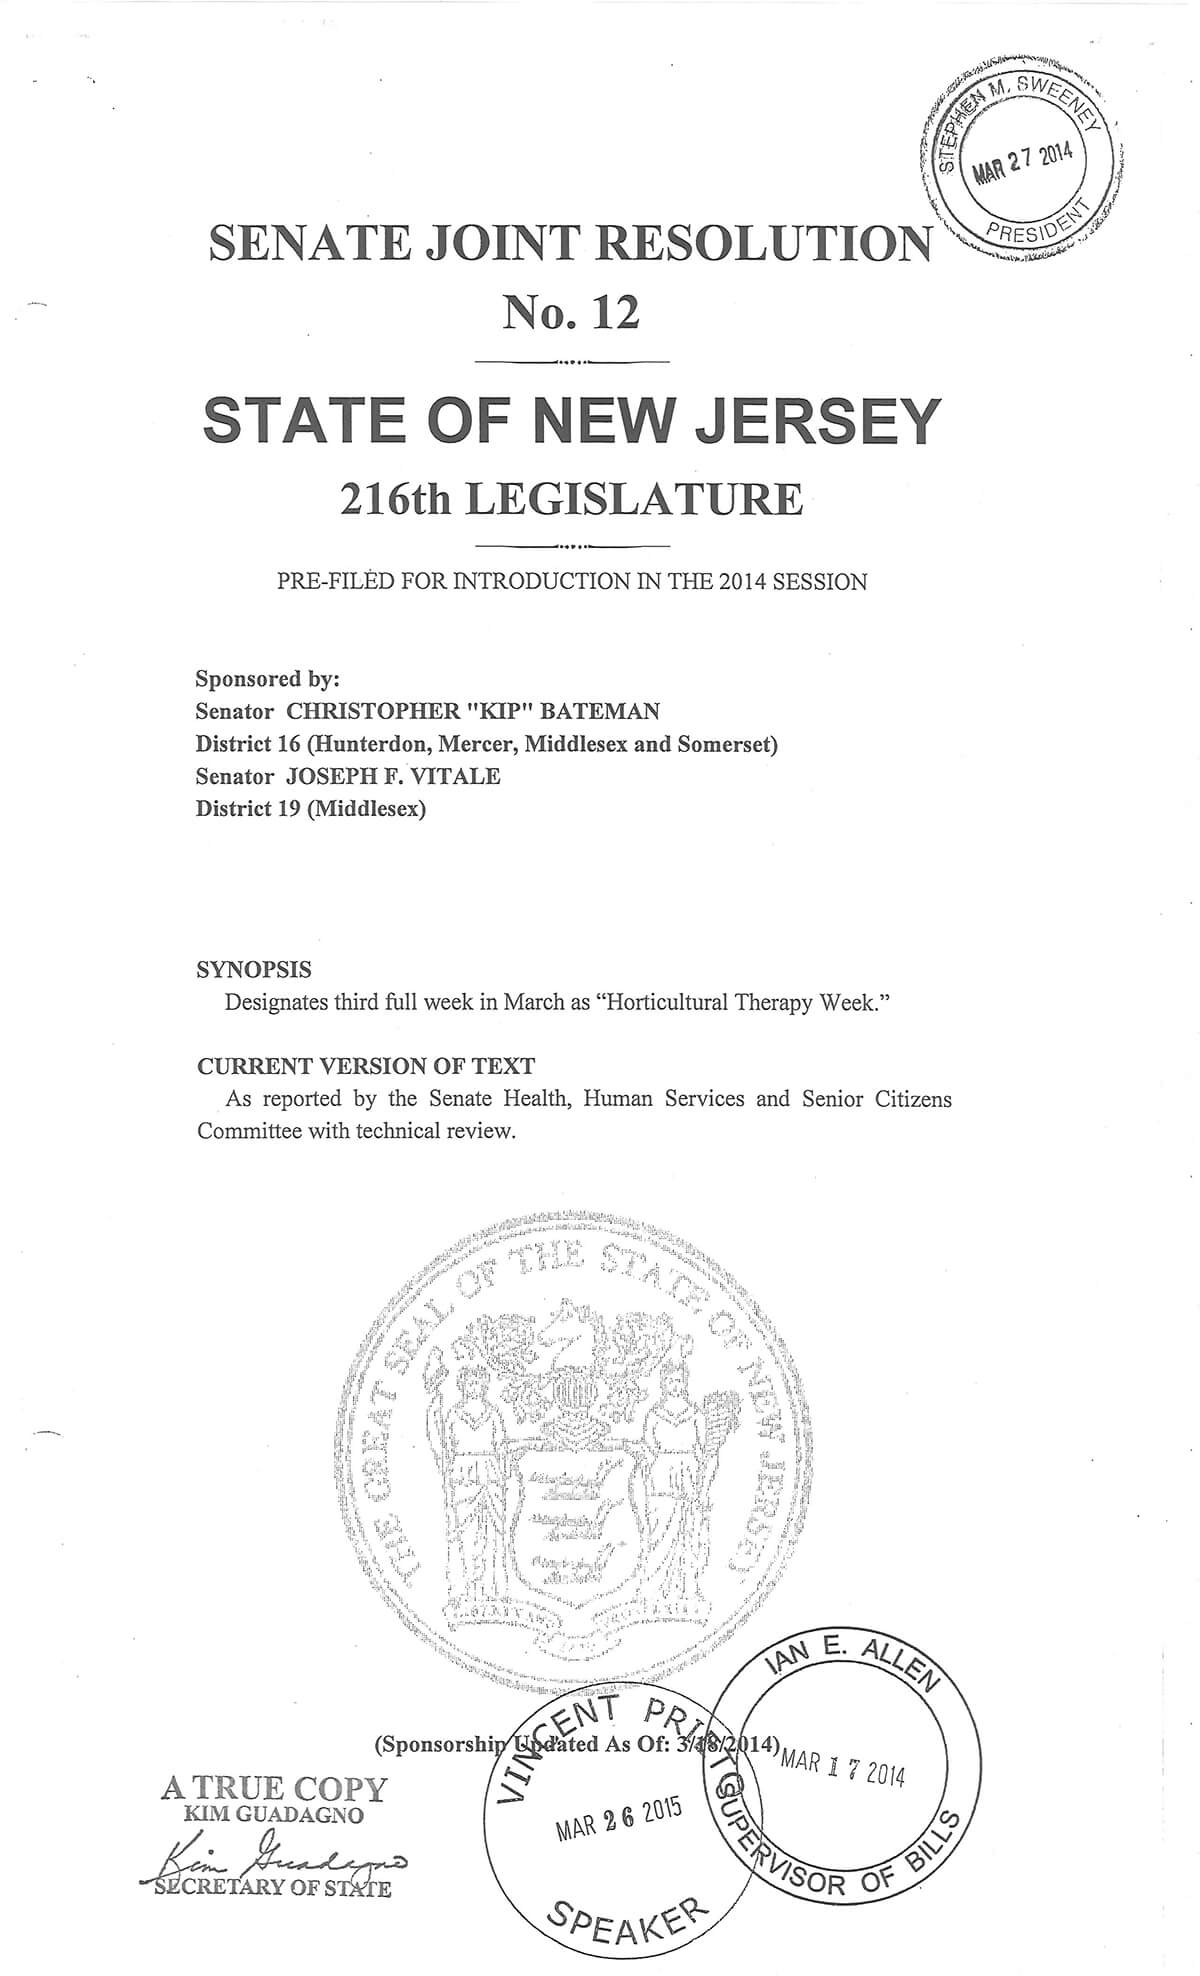 NJ-Bill-True-Copy-Signed